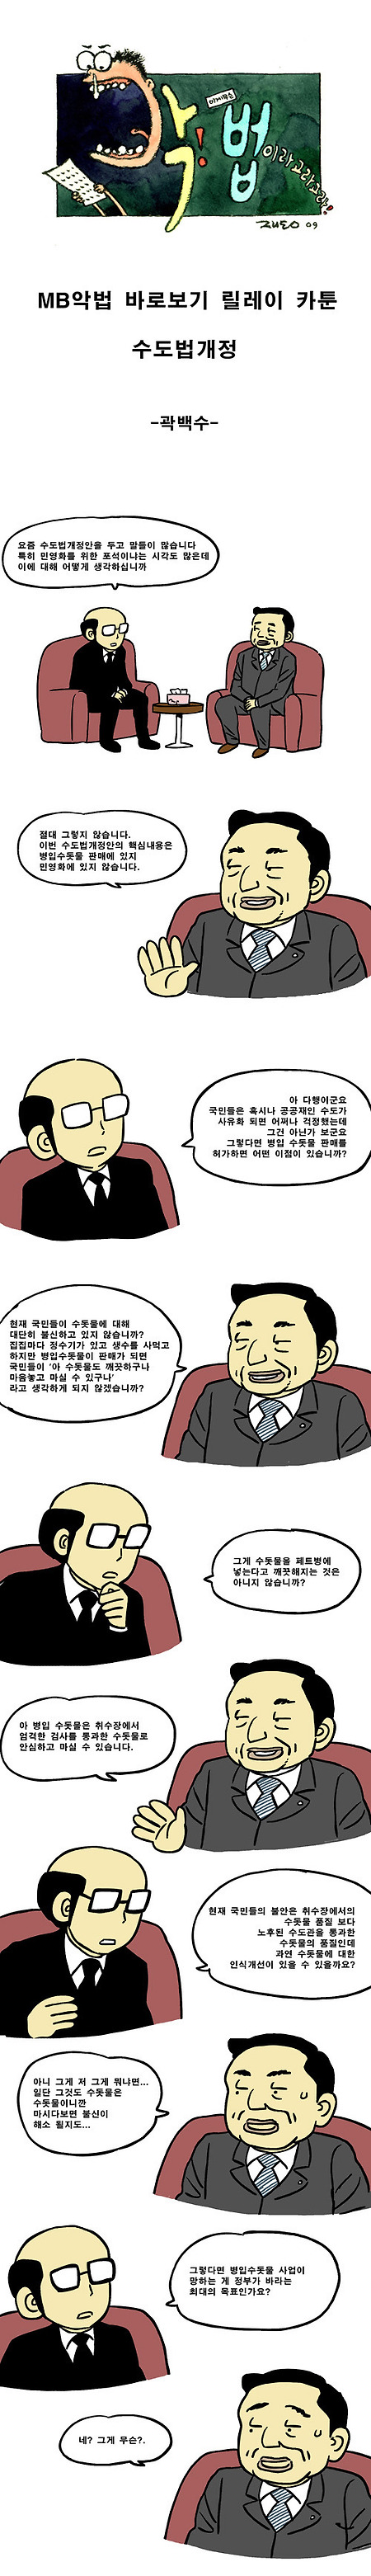 [펌]악법 카툰 릴레이 3화(수도법 - 곽백수)